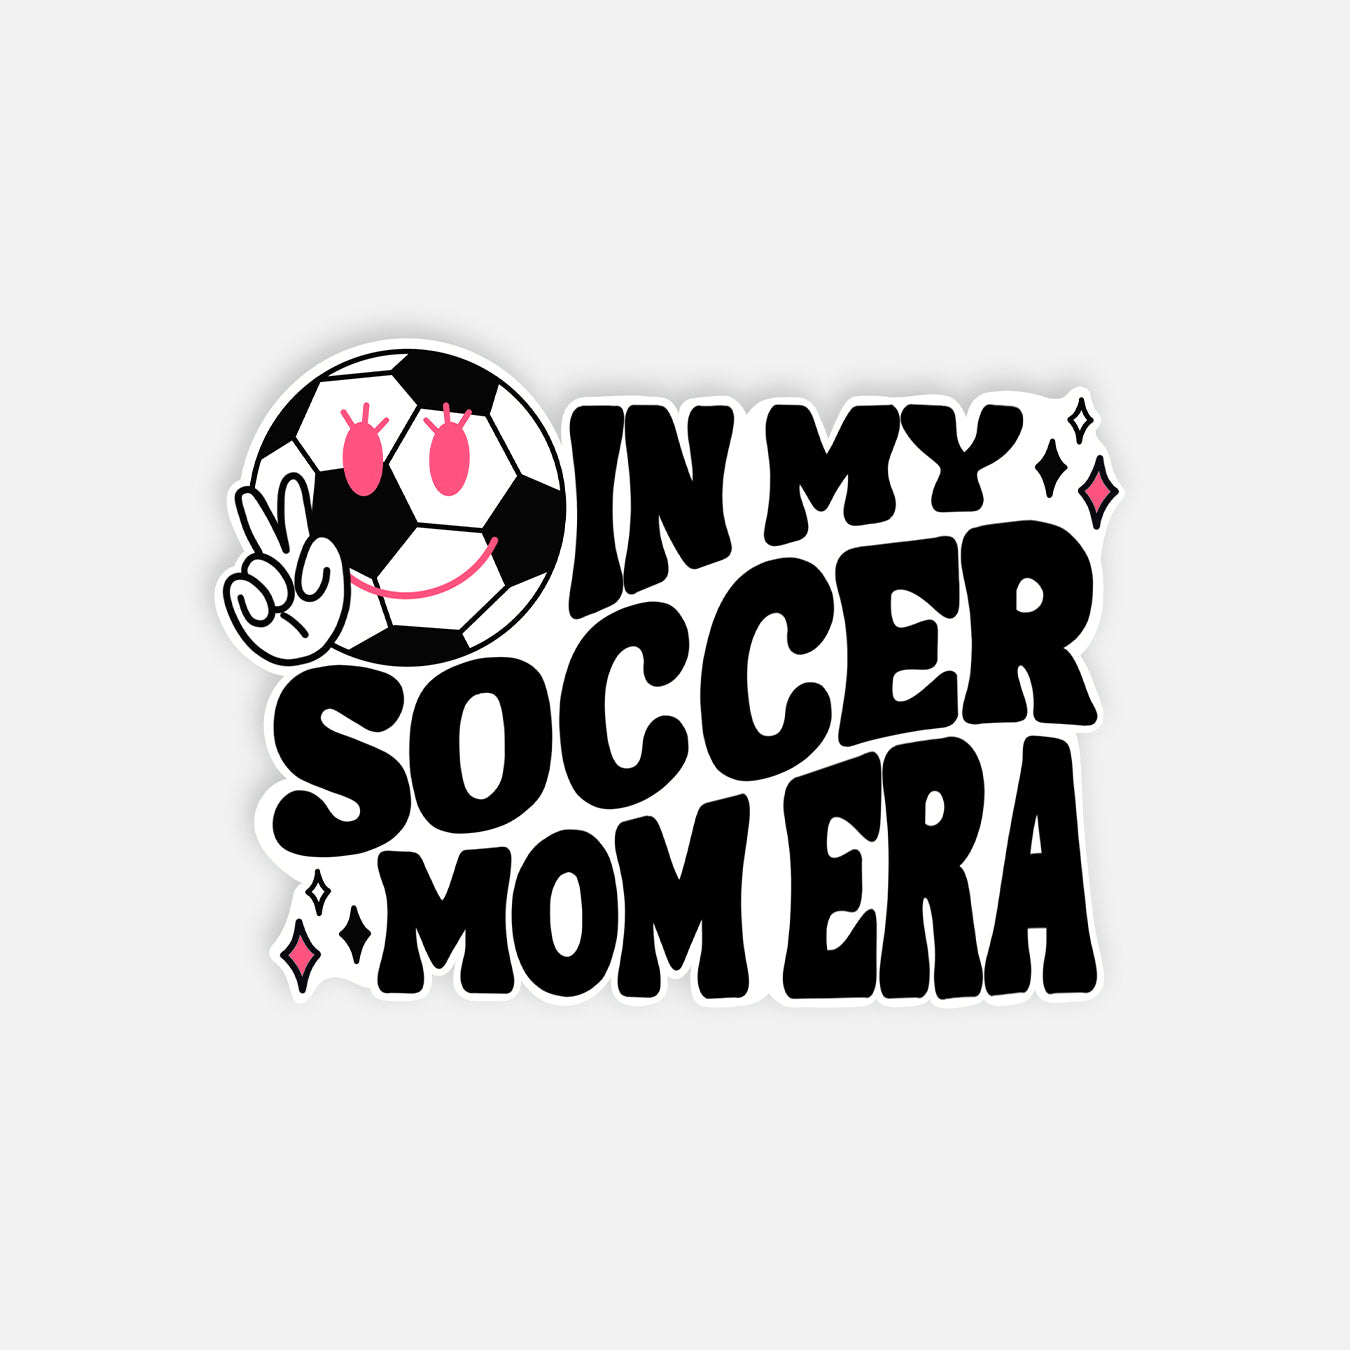 Soccer Mom Era Vinyl Sticker